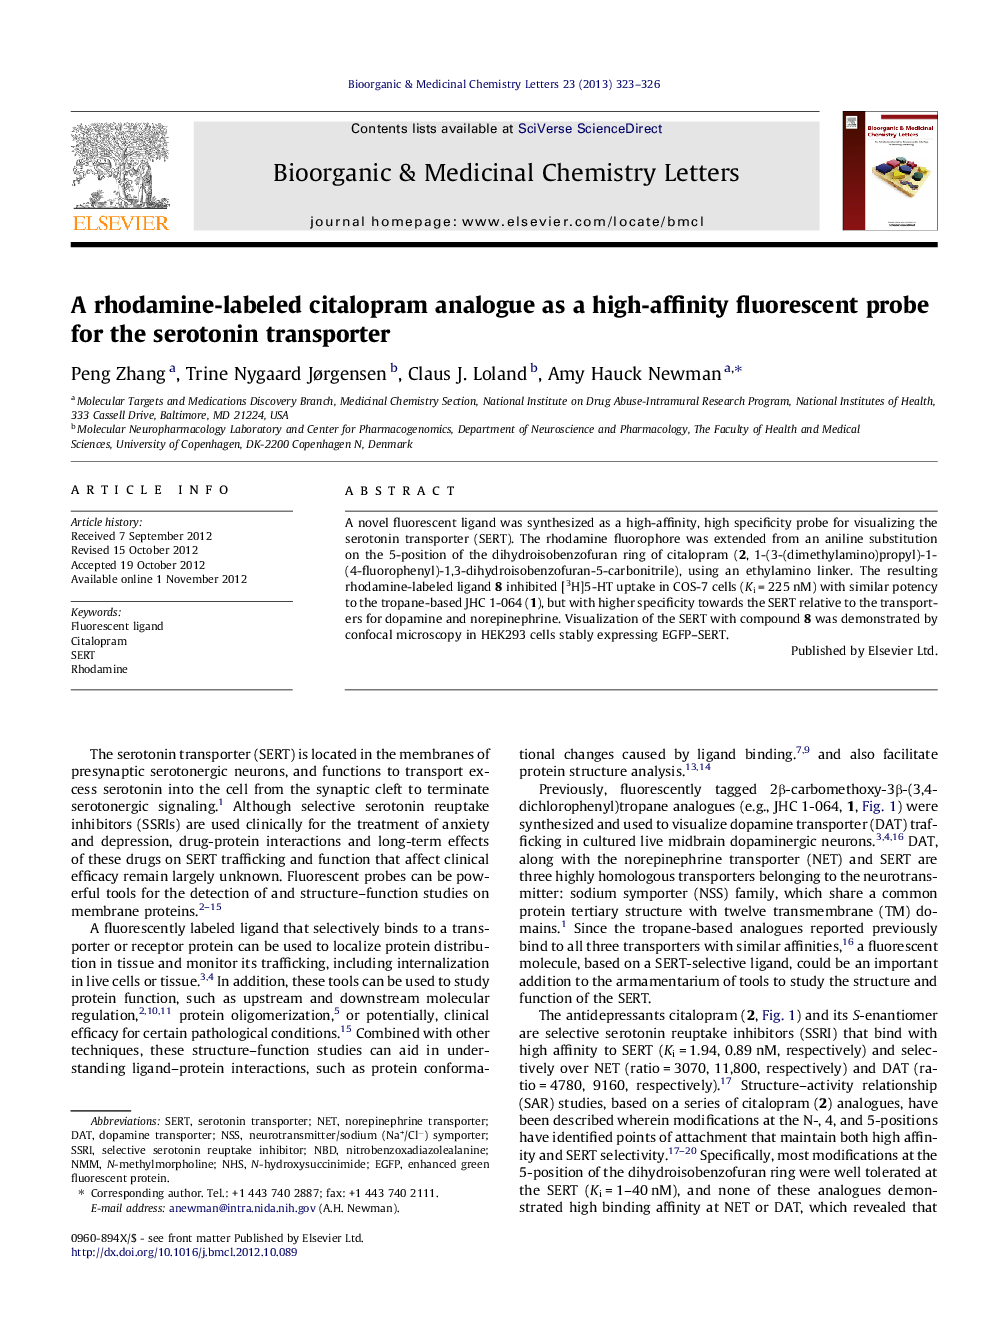 آنالوگ سیتالوپرام حاوی ردمامین به عنوان یک پروب فلورسنت باکتری برای انتقال دهنده سروتونین 